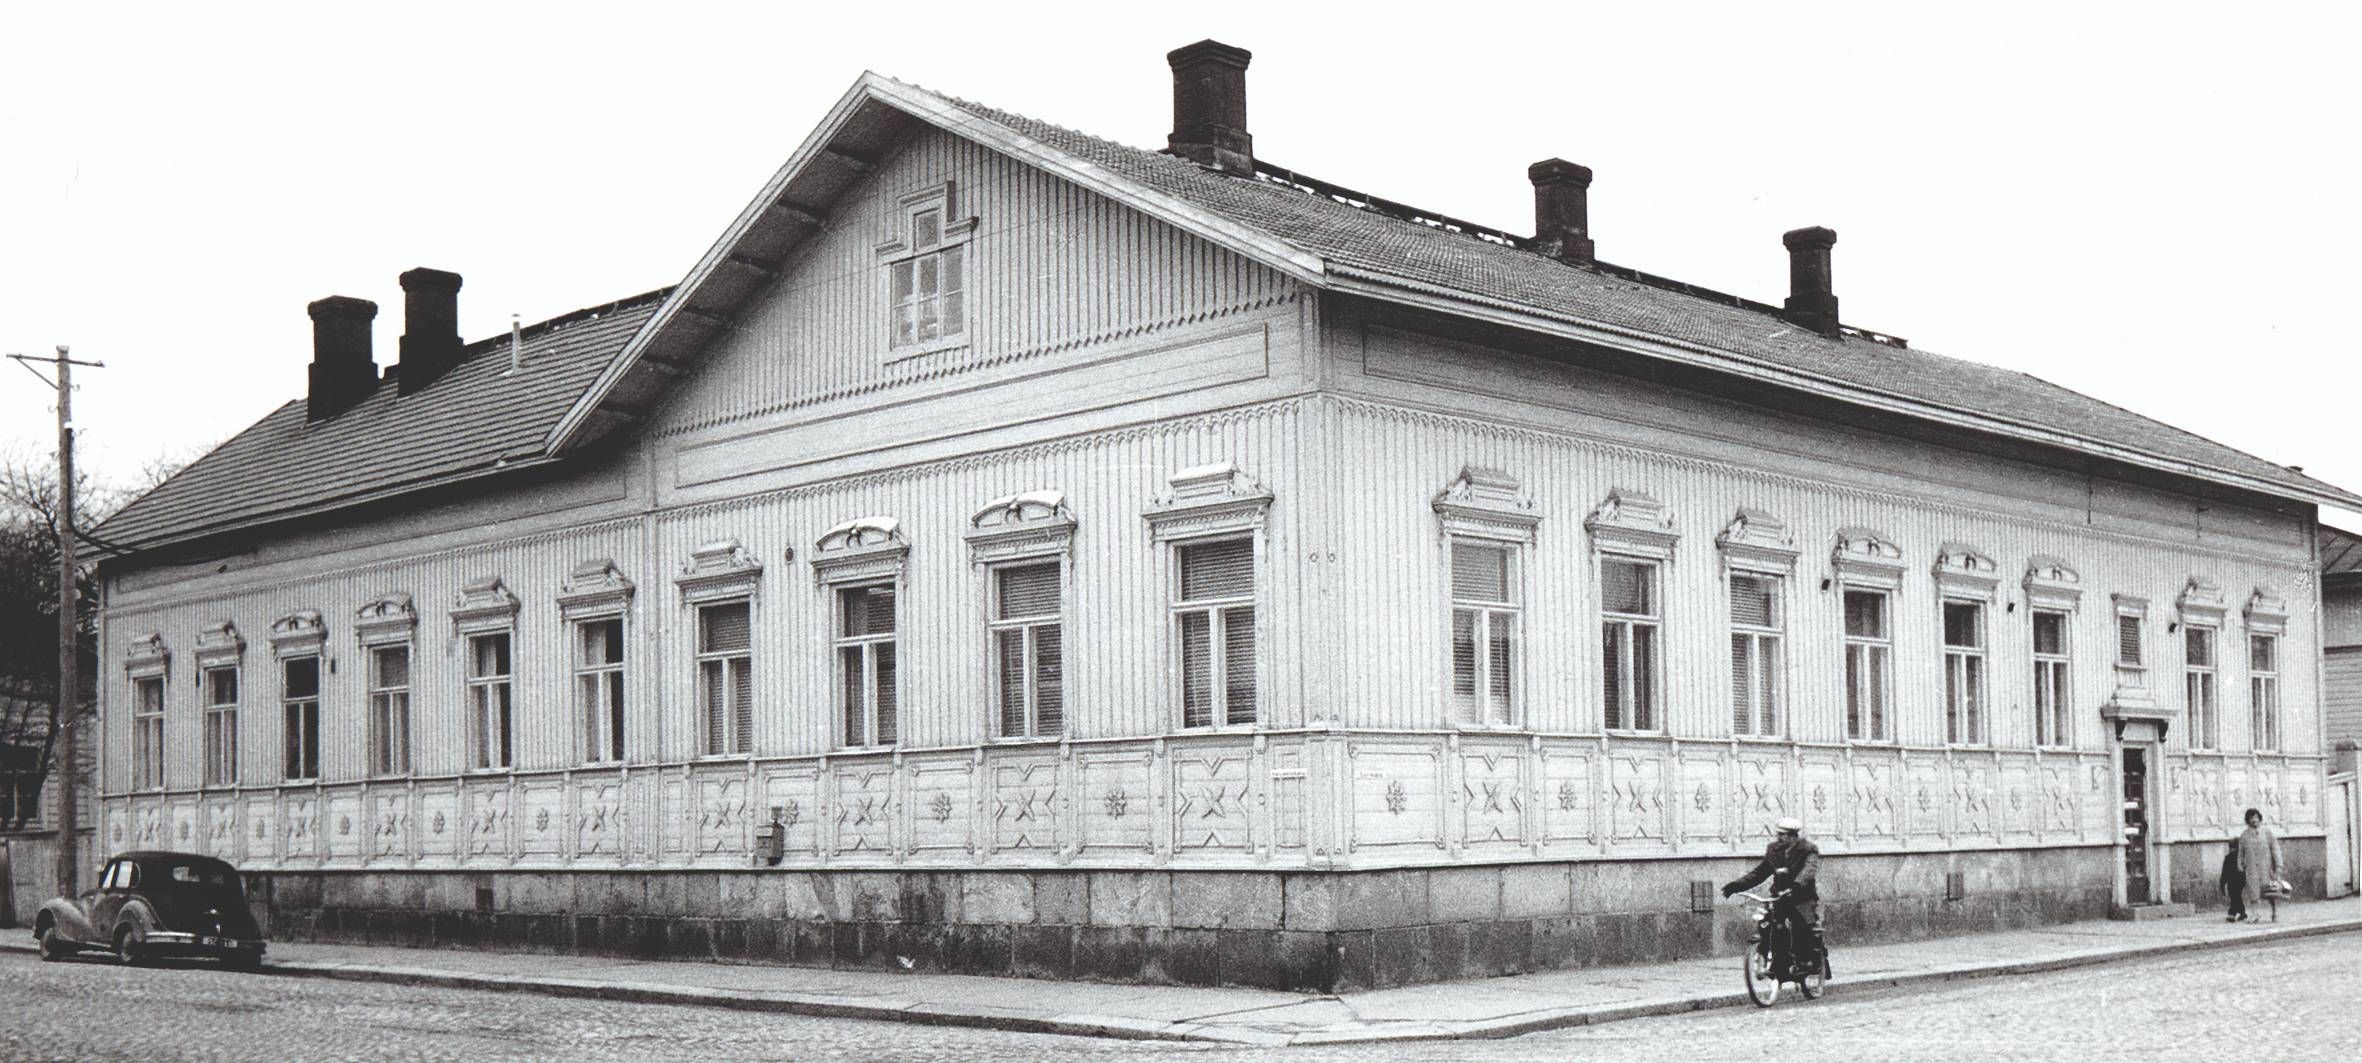 Mustavalkokuva Koskikadulta Mustosen talosta 1950-luvulta.